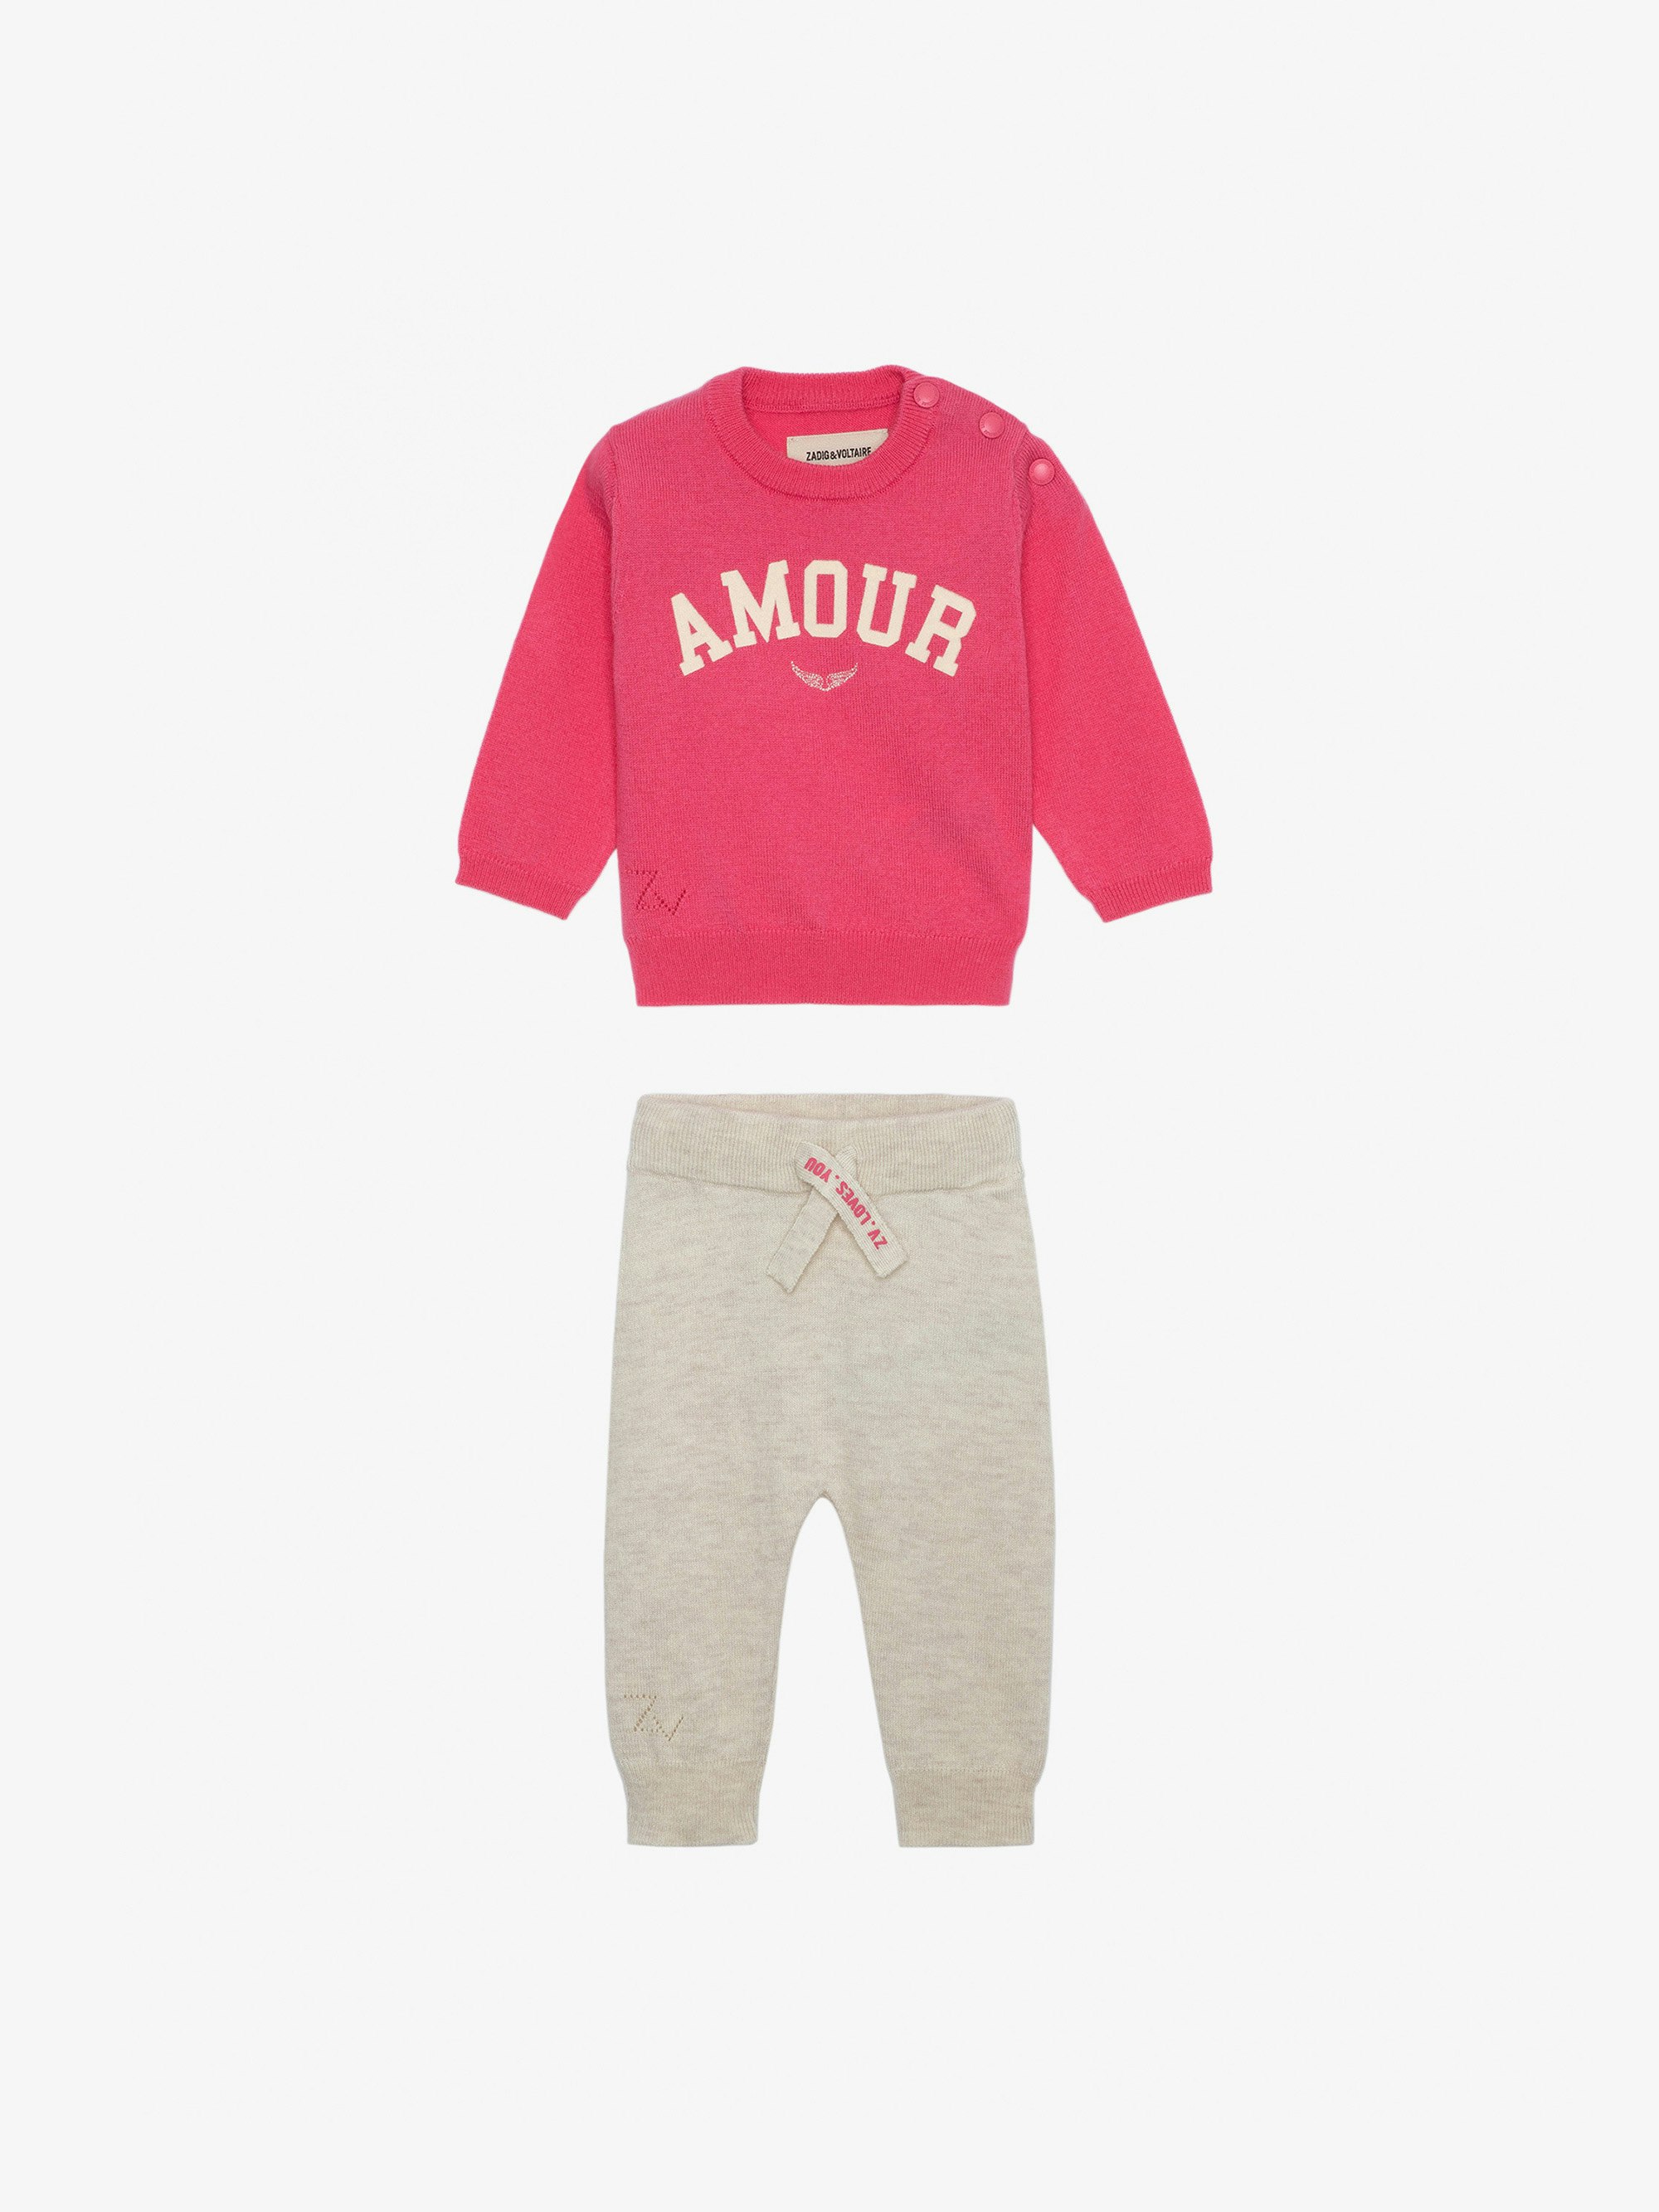 Set Pona für Babys - Set bestehend aus einem Pullover mit der Aufschrift „Amour“ und Hose aus Strick in Babyrosa.